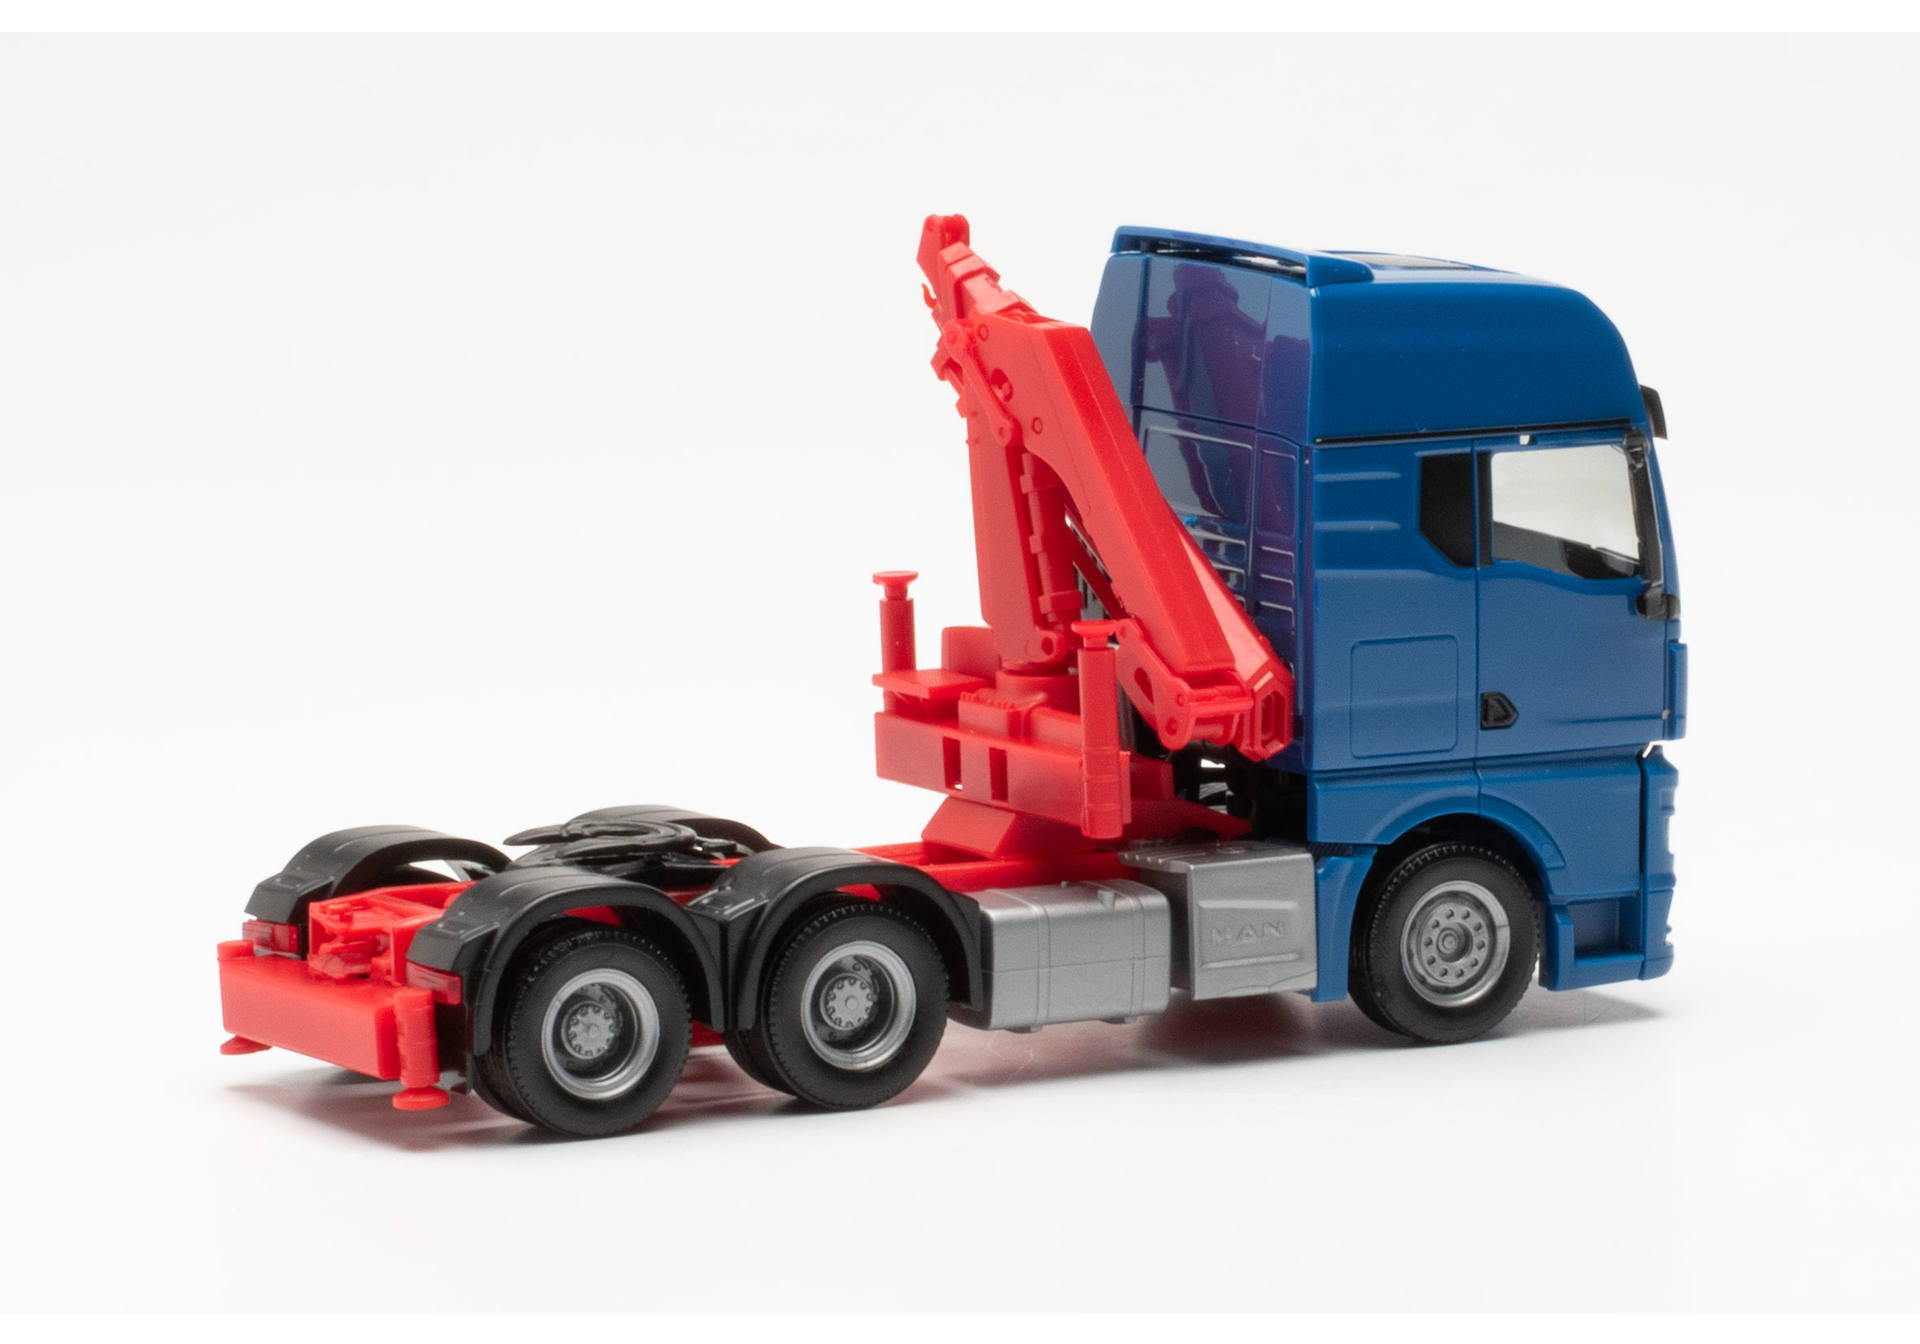 MAN TGX GX 6x4 rigid tractor with crane, blue